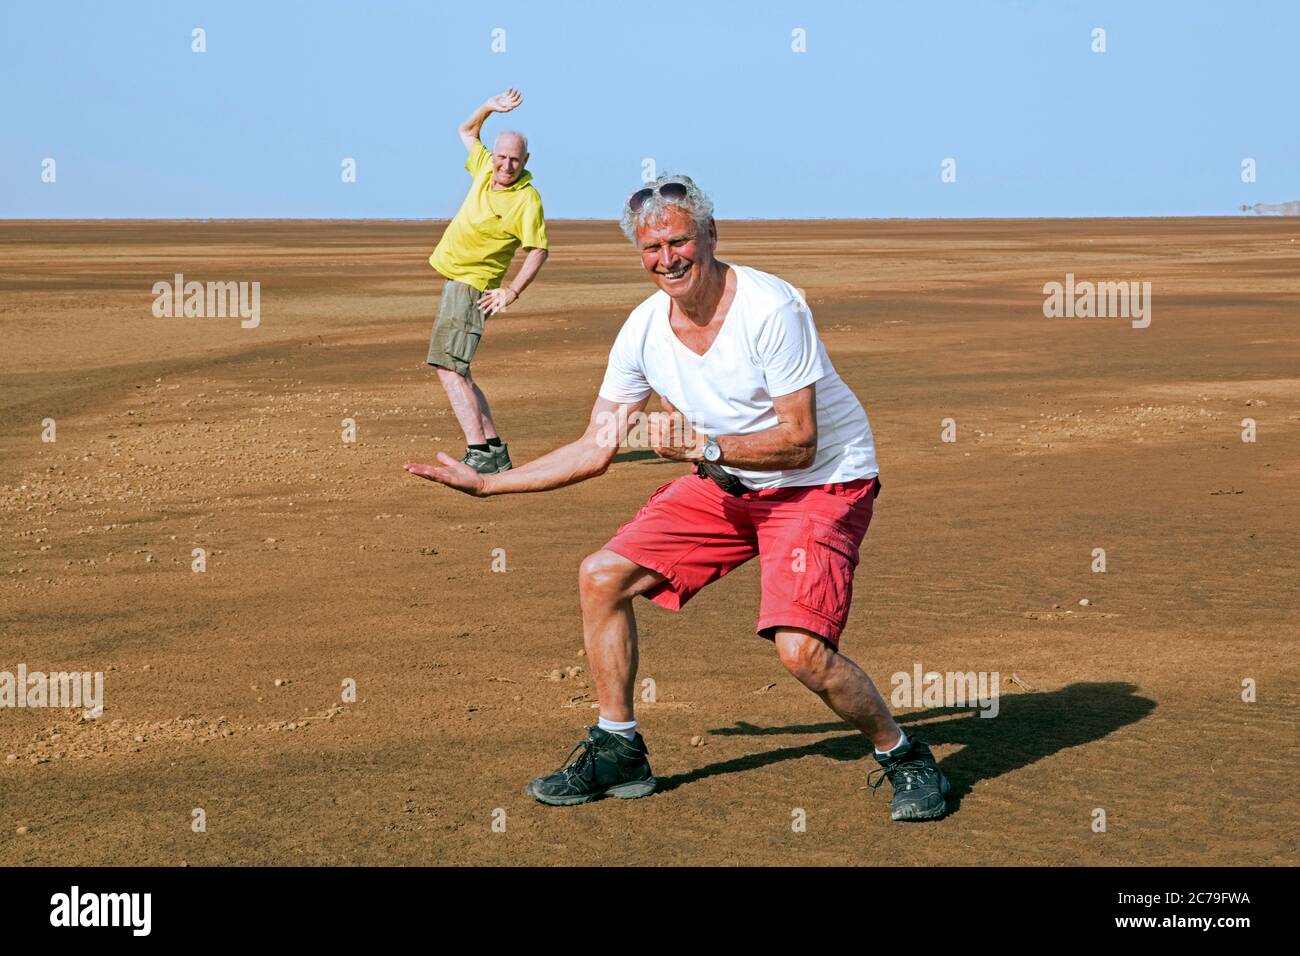 Zwei Touristen spielen in Sandwüste, Spaß mit Perspektive in der Danakil Depression, Afar Triangle / Afar Depression, Äthiopien, Afrika Stockfoto